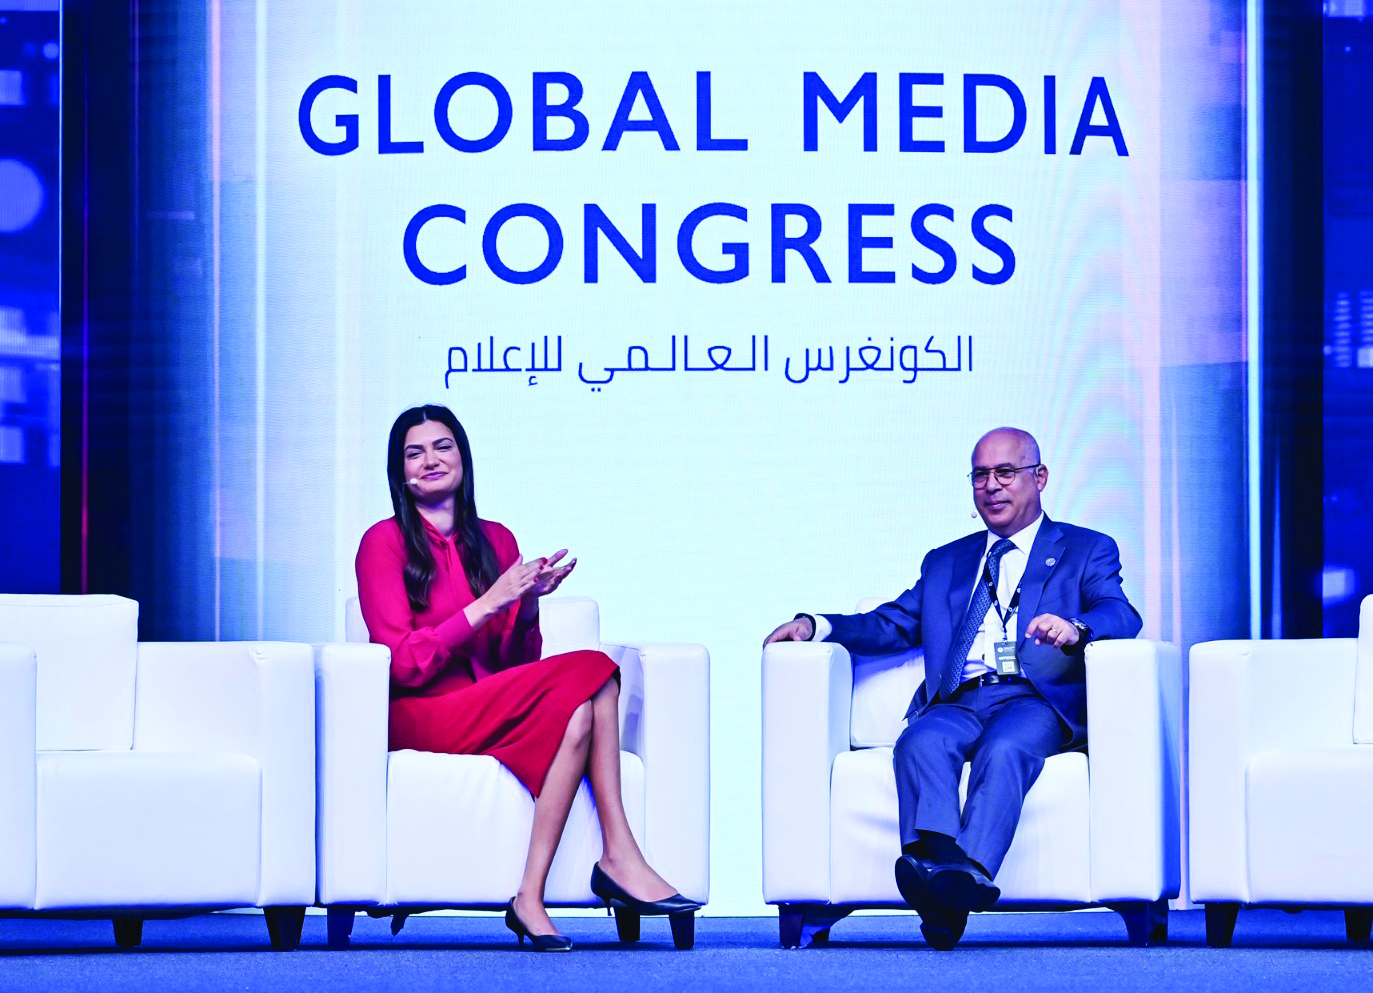 بيار شويري يسلّط الضوء على أبرز التحديات التي تواجه الإعلام العربي خلال النسخة الثانية من الكونغرس العالمي للإعلام